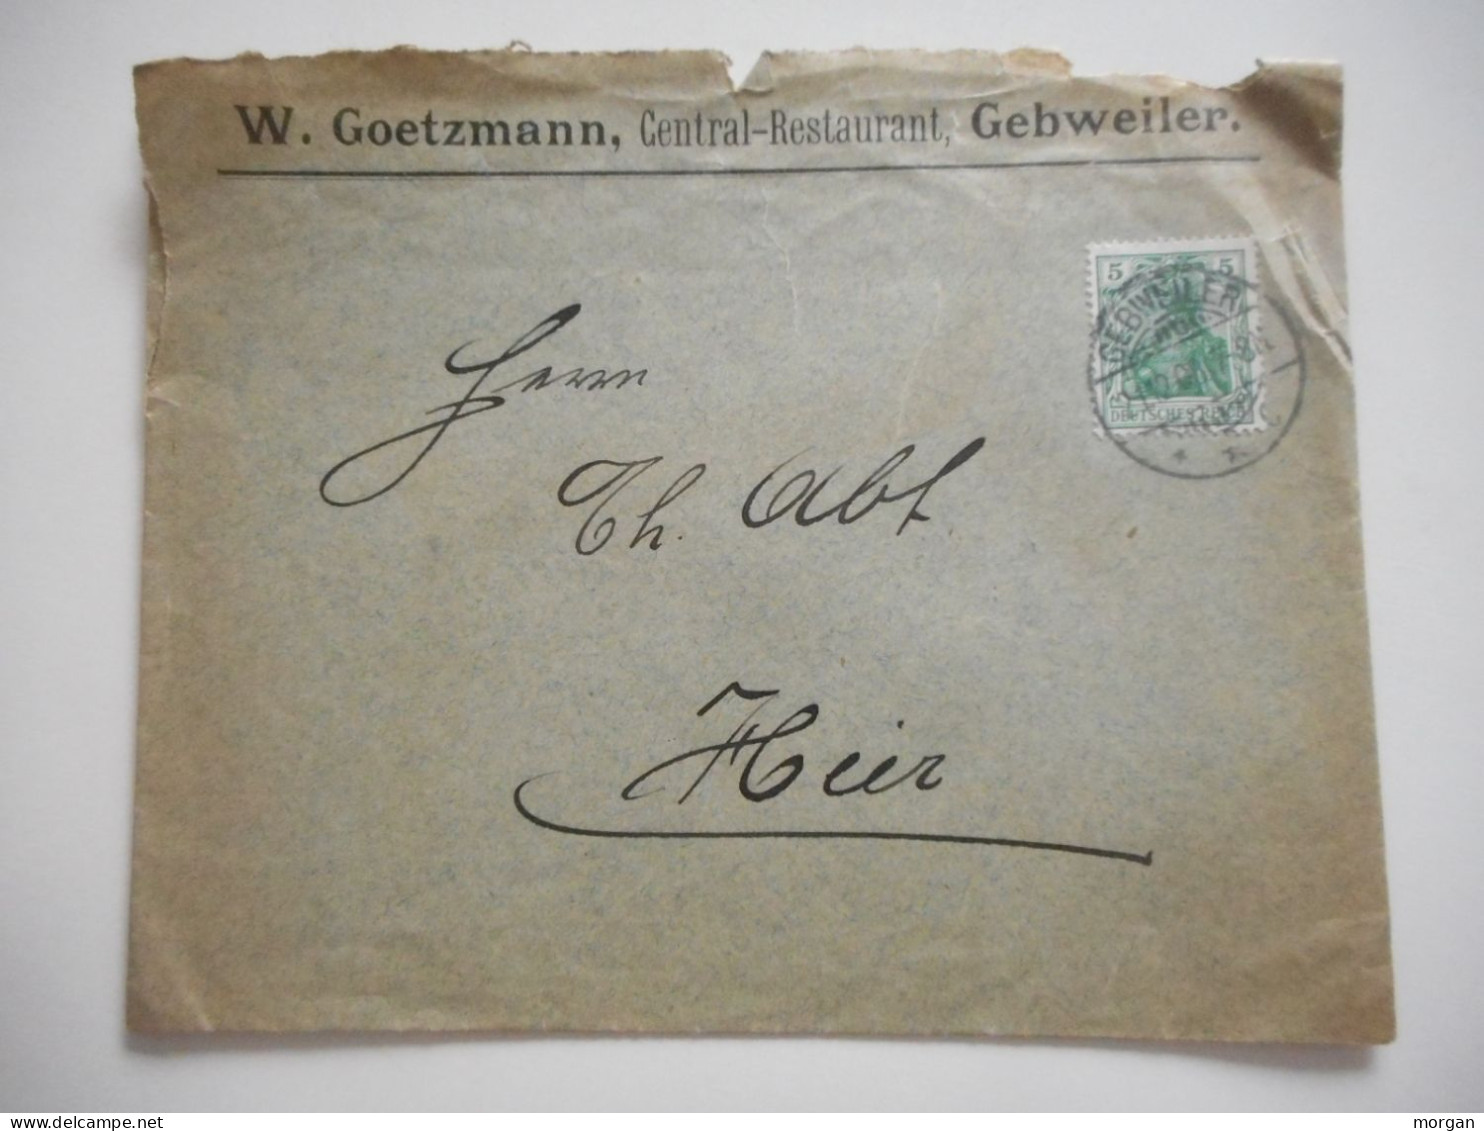 ENVELOPPE ALSACE, GUEBWILLER  RESTAURANT CENTRAL W. GOETZMANN 1907  COMMERCIALE - Collections (sans Albums)